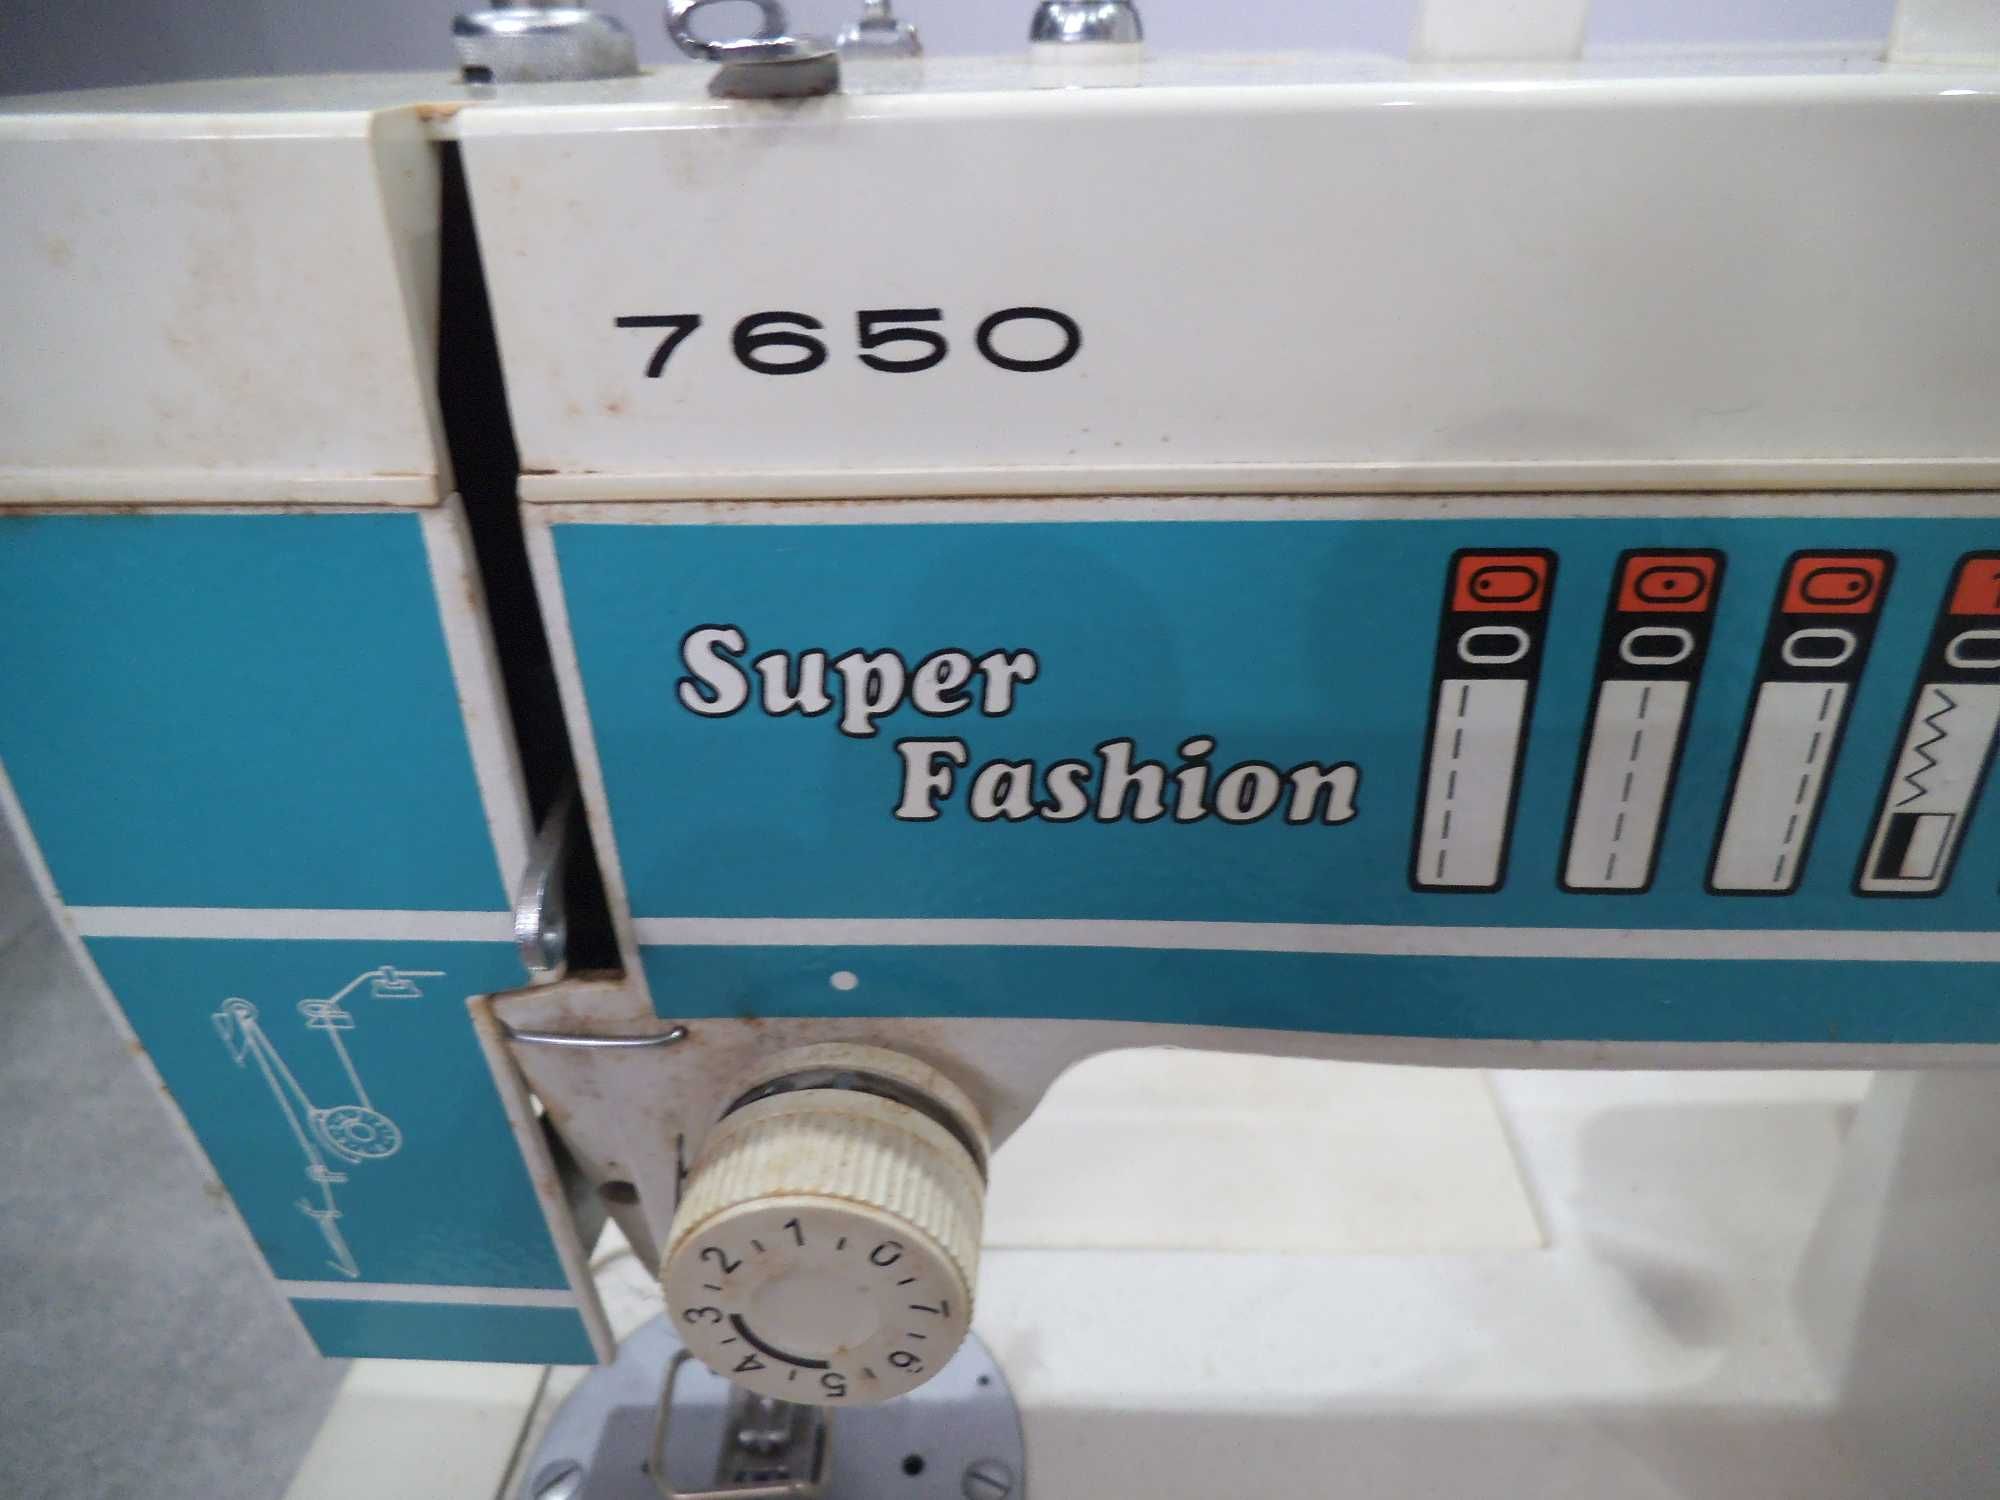 maszyna do szycia super fashion 7650